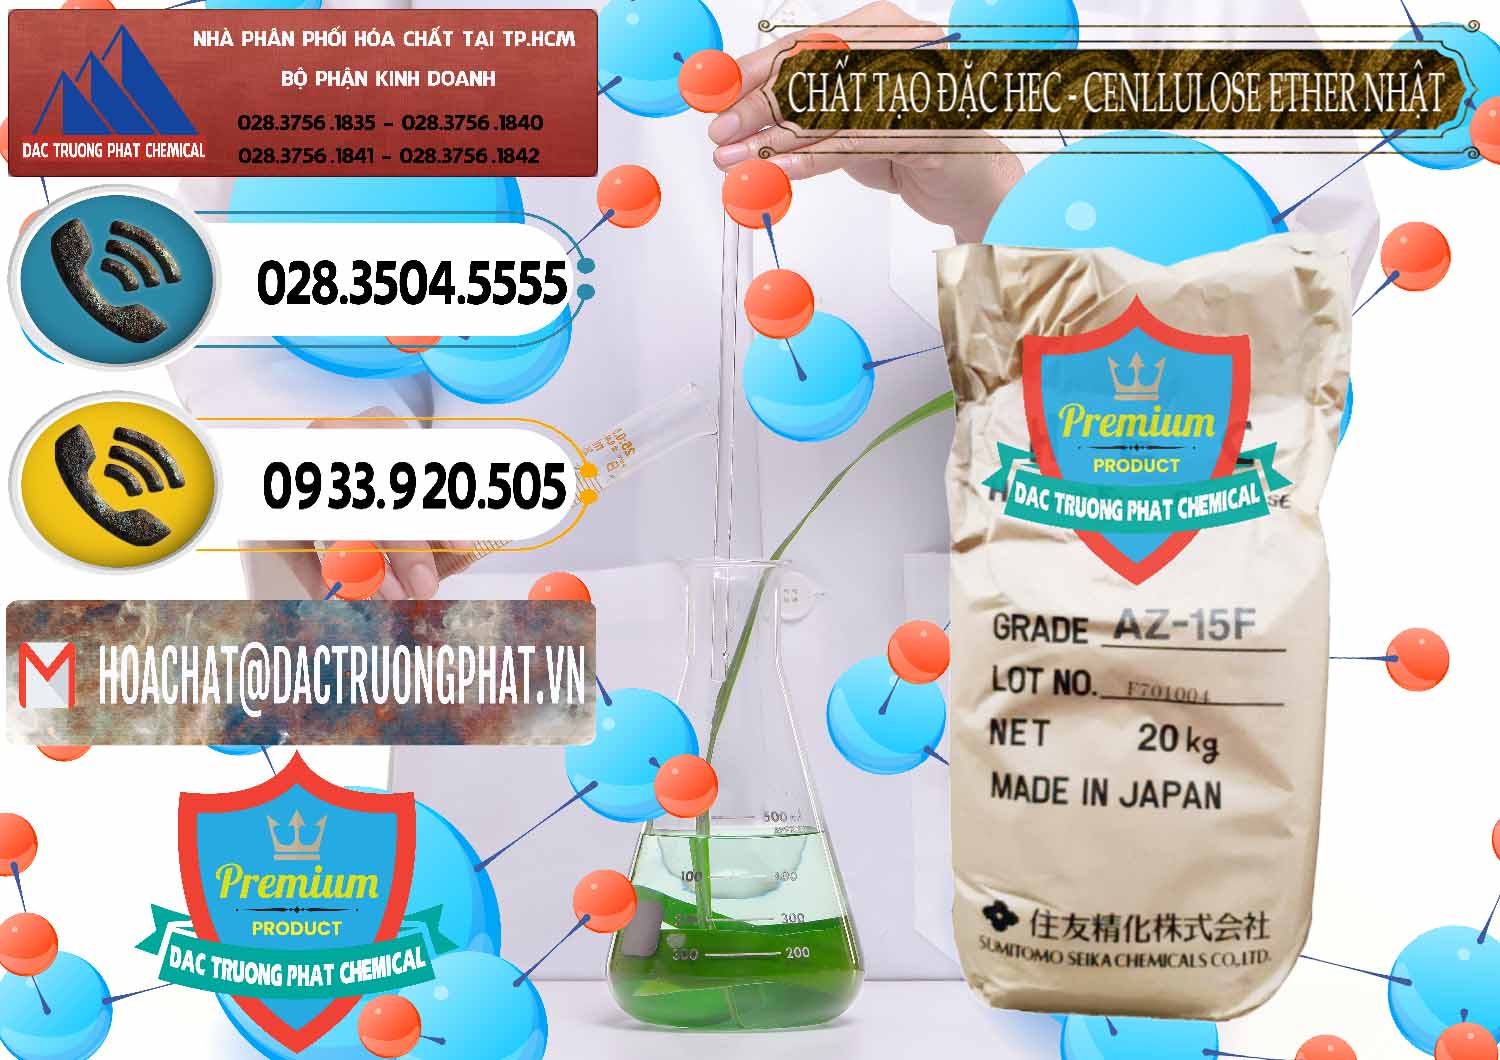 Đơn vị bán và phân phối Chất Tạo Đặc Hec Mecellose – Cenllulose Ether Nhật Bản Japan - 0367 - Nơi chuyên phân phối ( kinh doanh ) hóa chất tại TP.HCM - hoachatdetnhuom.vn